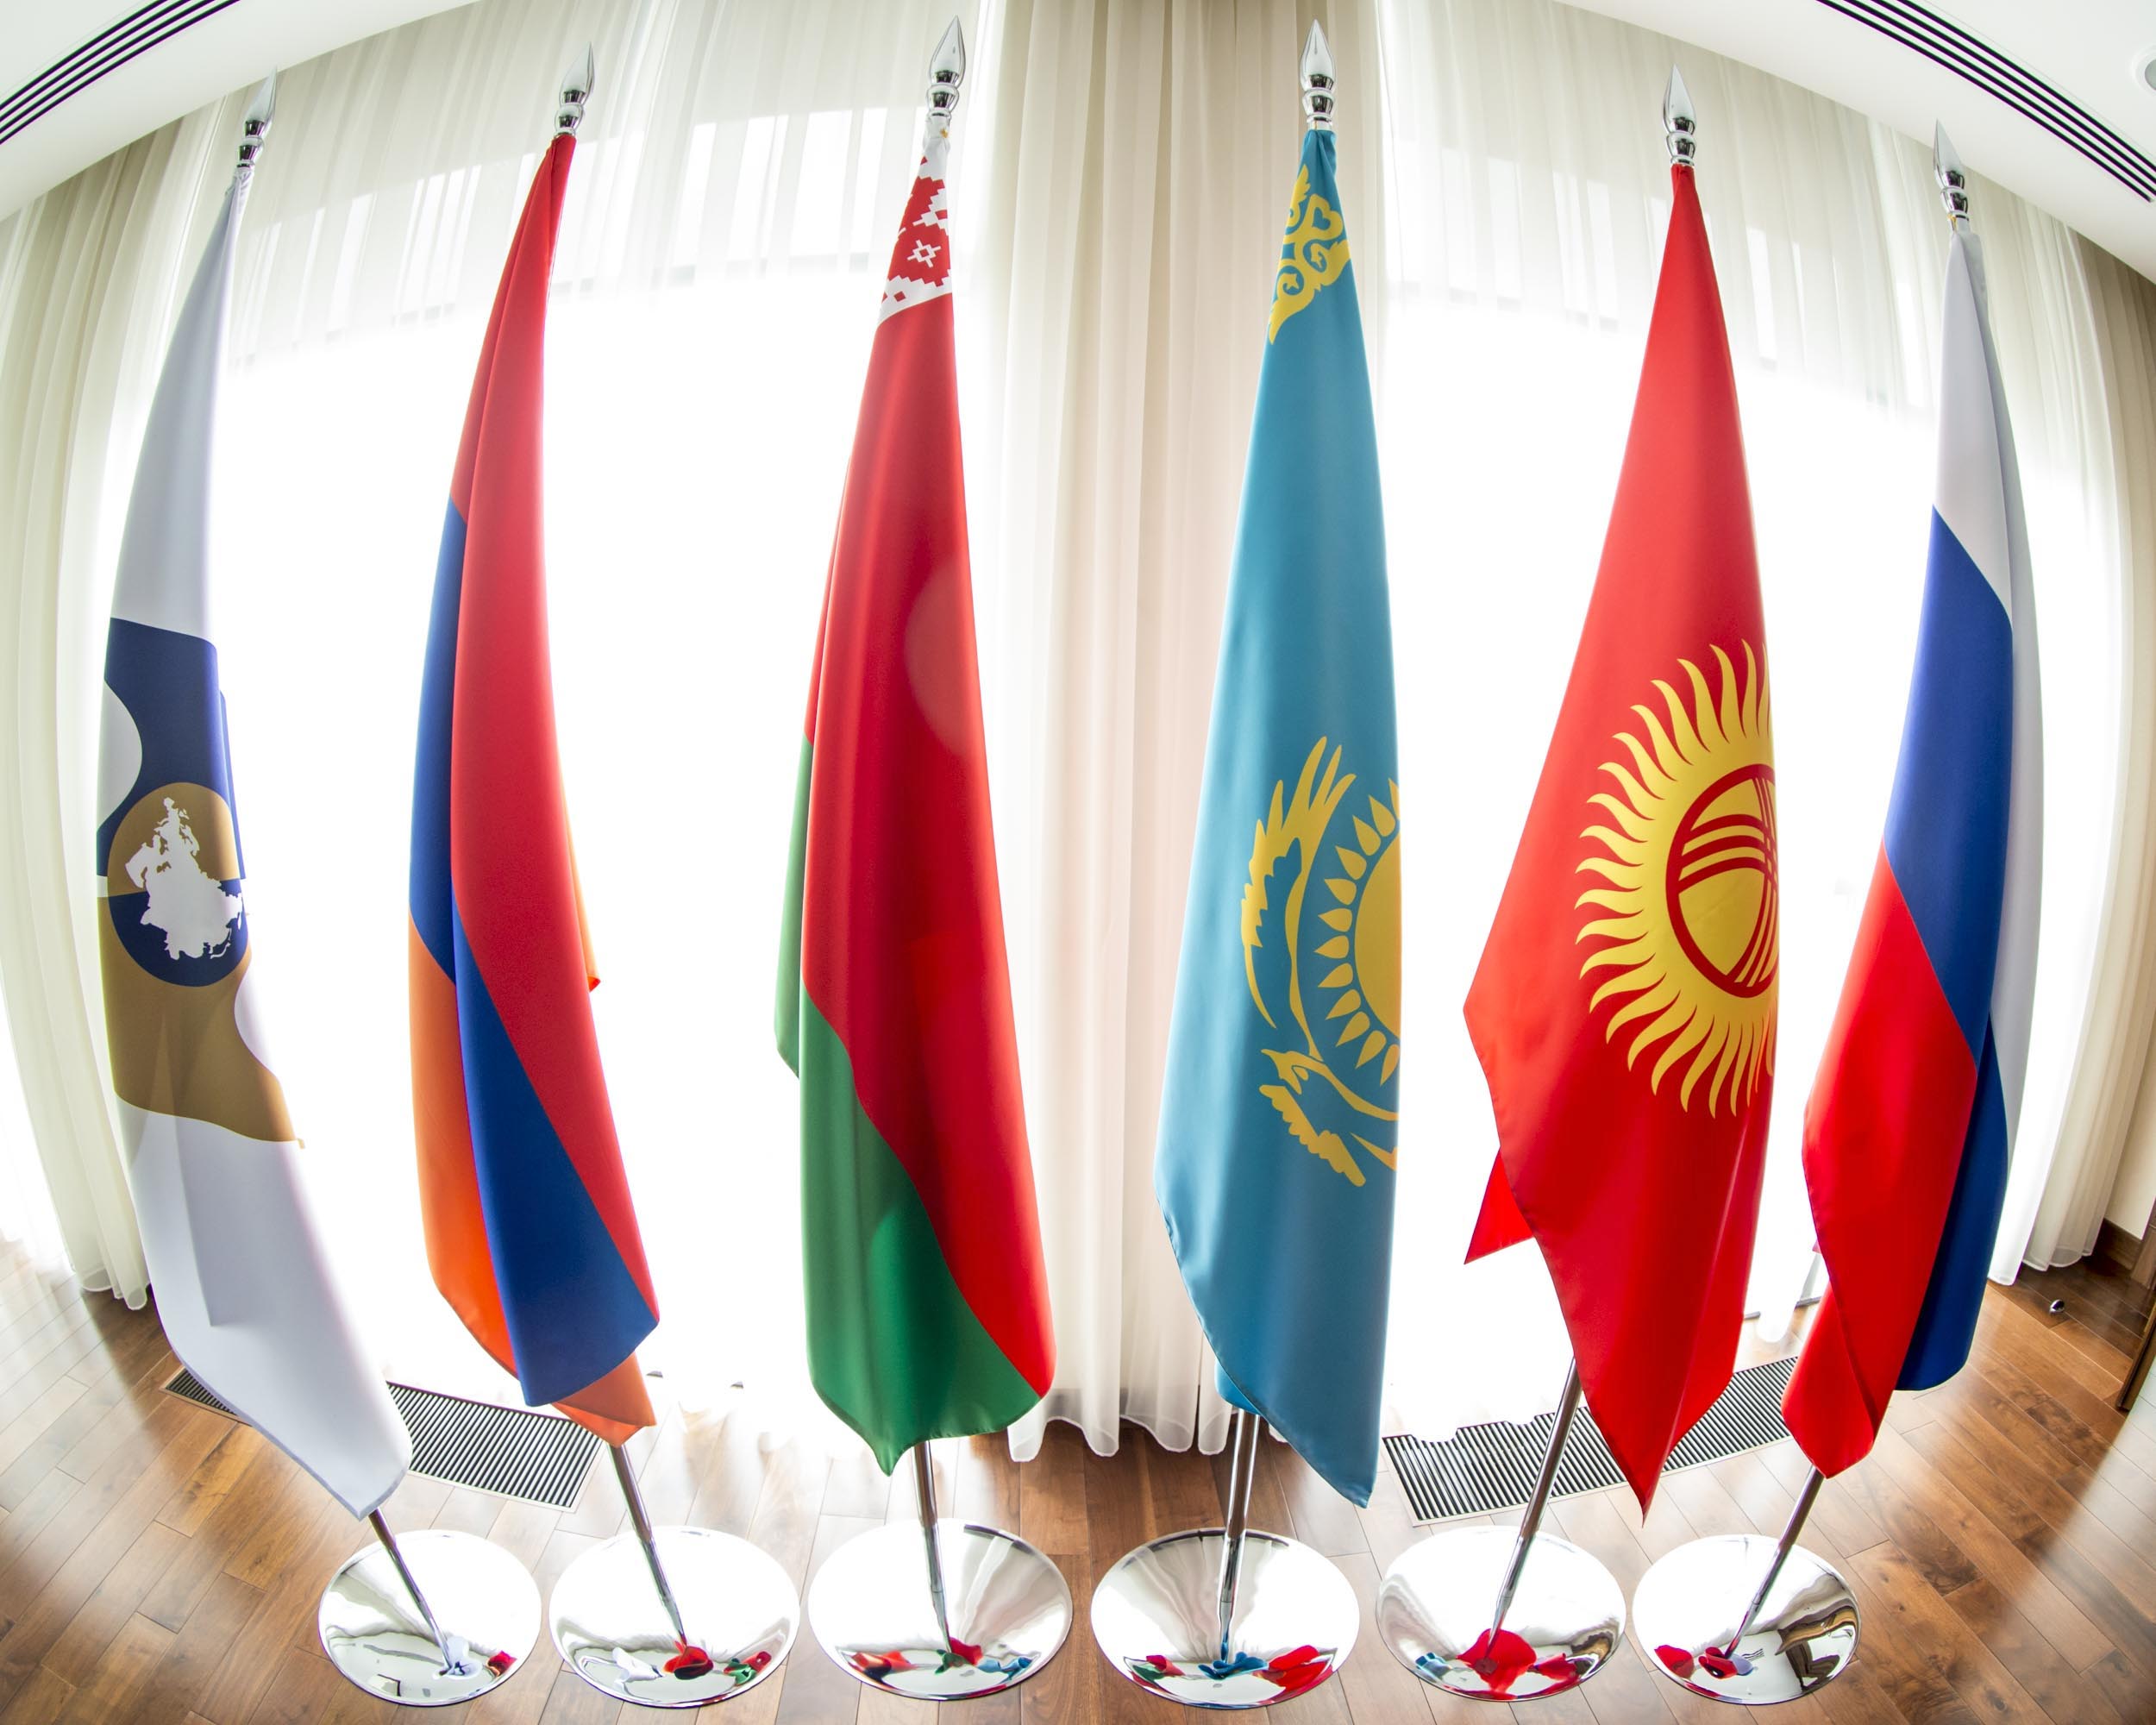 Казахстан и Россия предложили включить нагреваемый табак в техрегламент ЕАЭС  